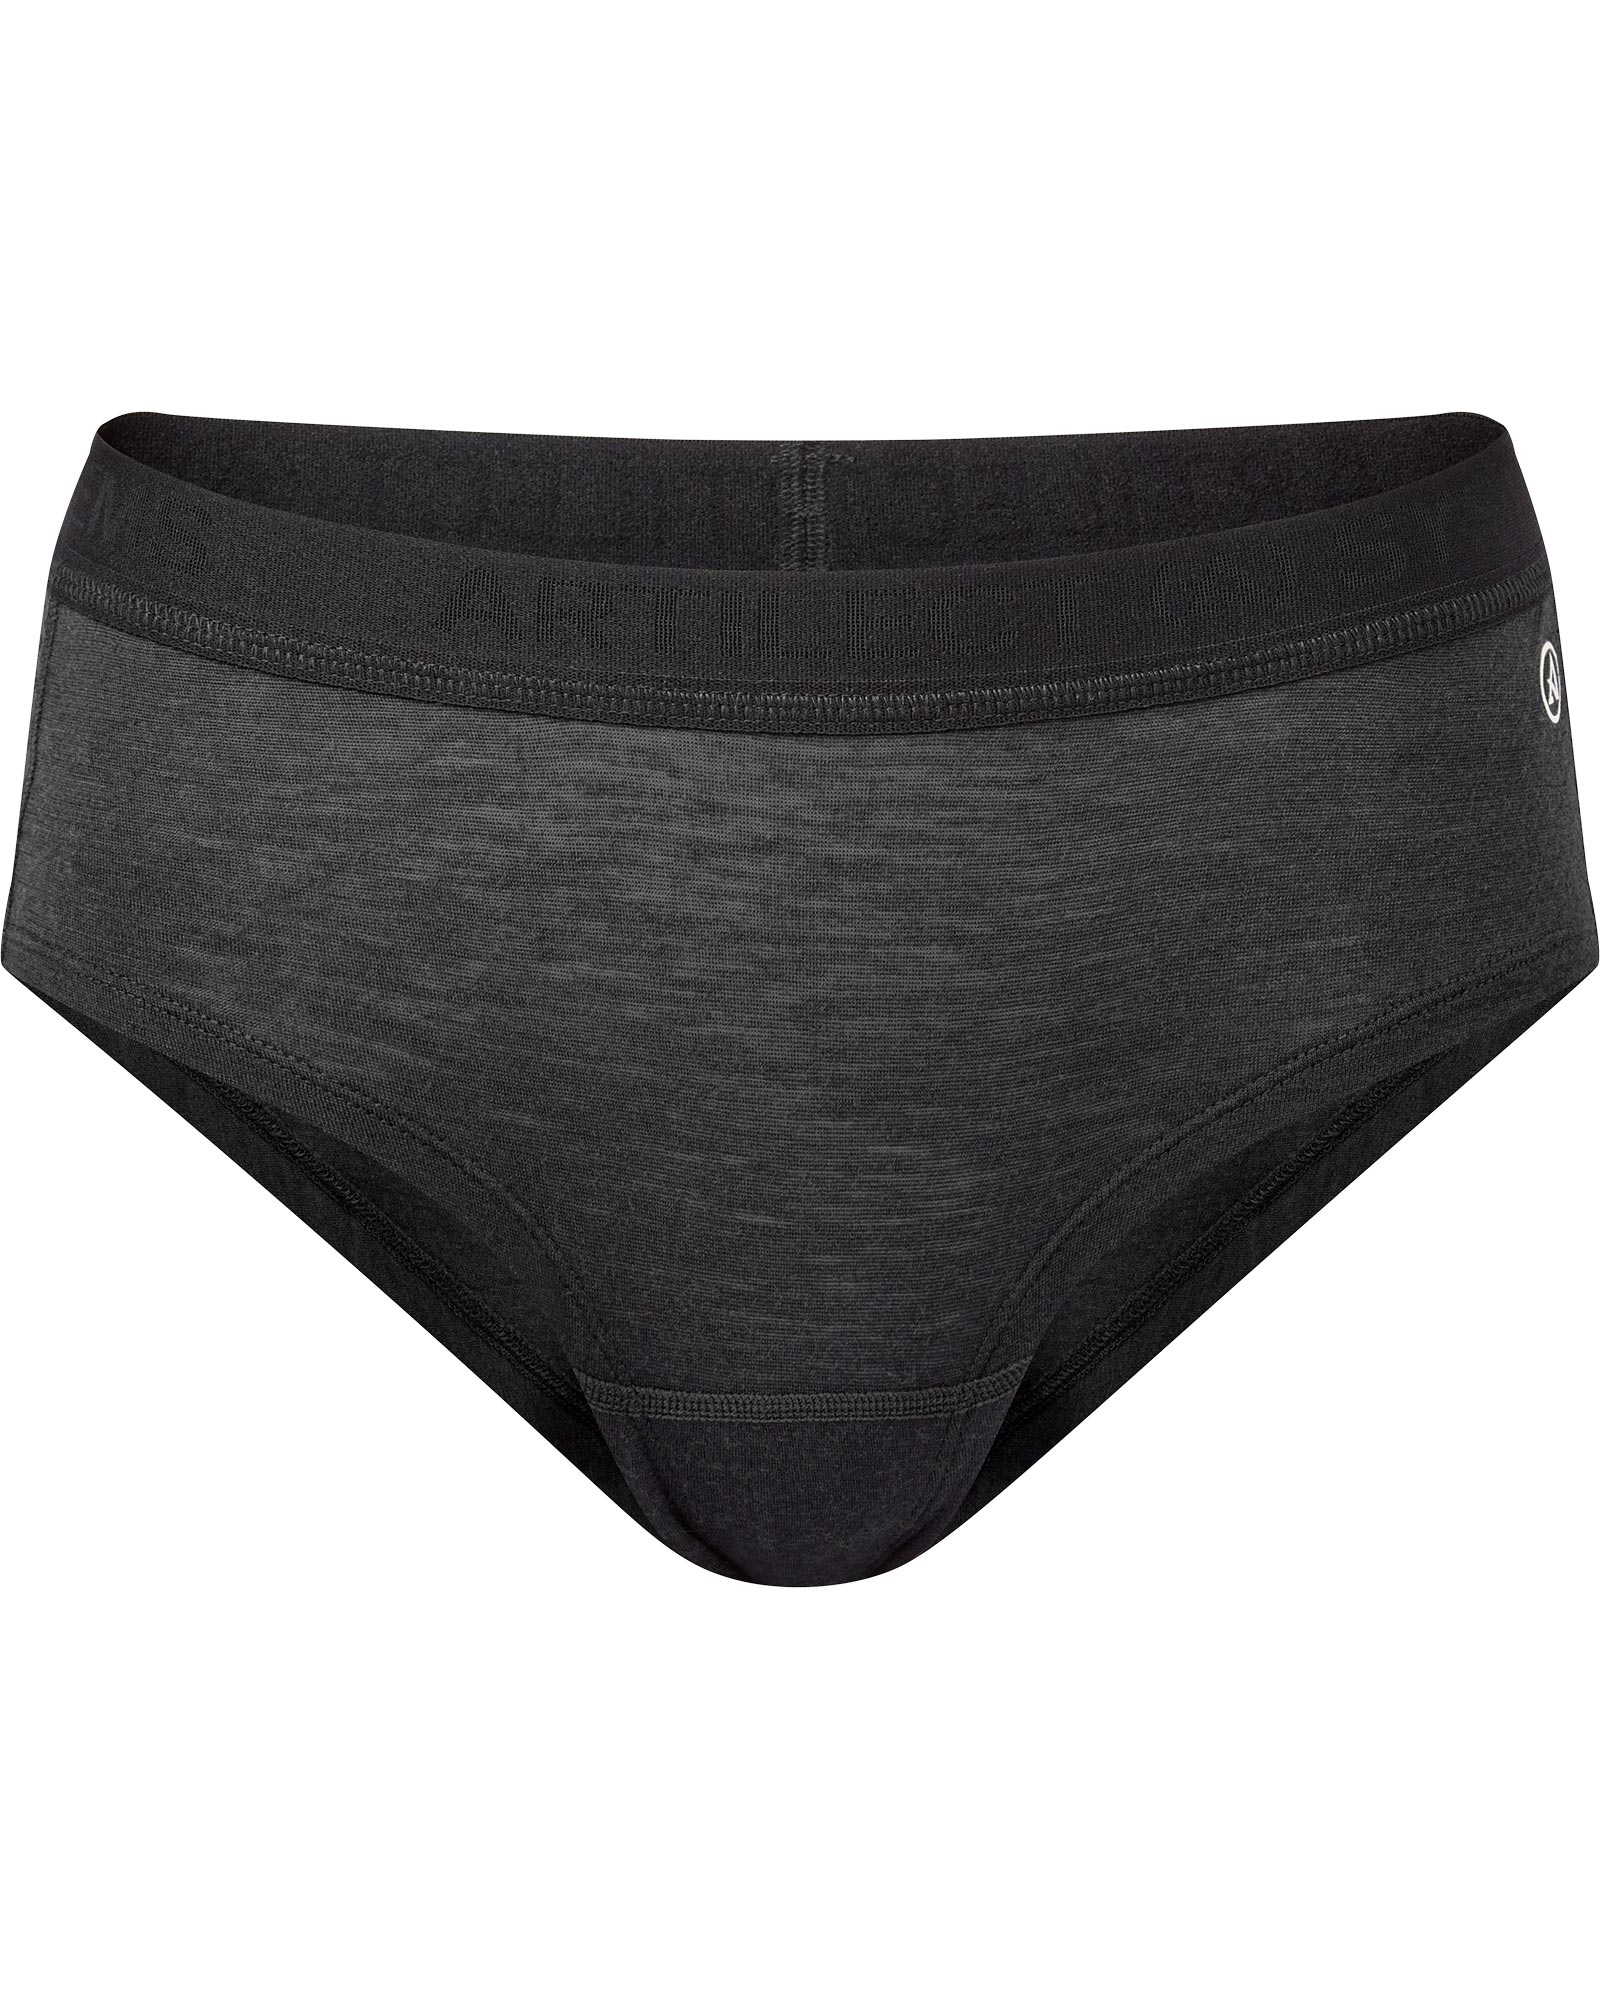 Artilect Boulder 125 Women’s Merino Hot Pants - black L